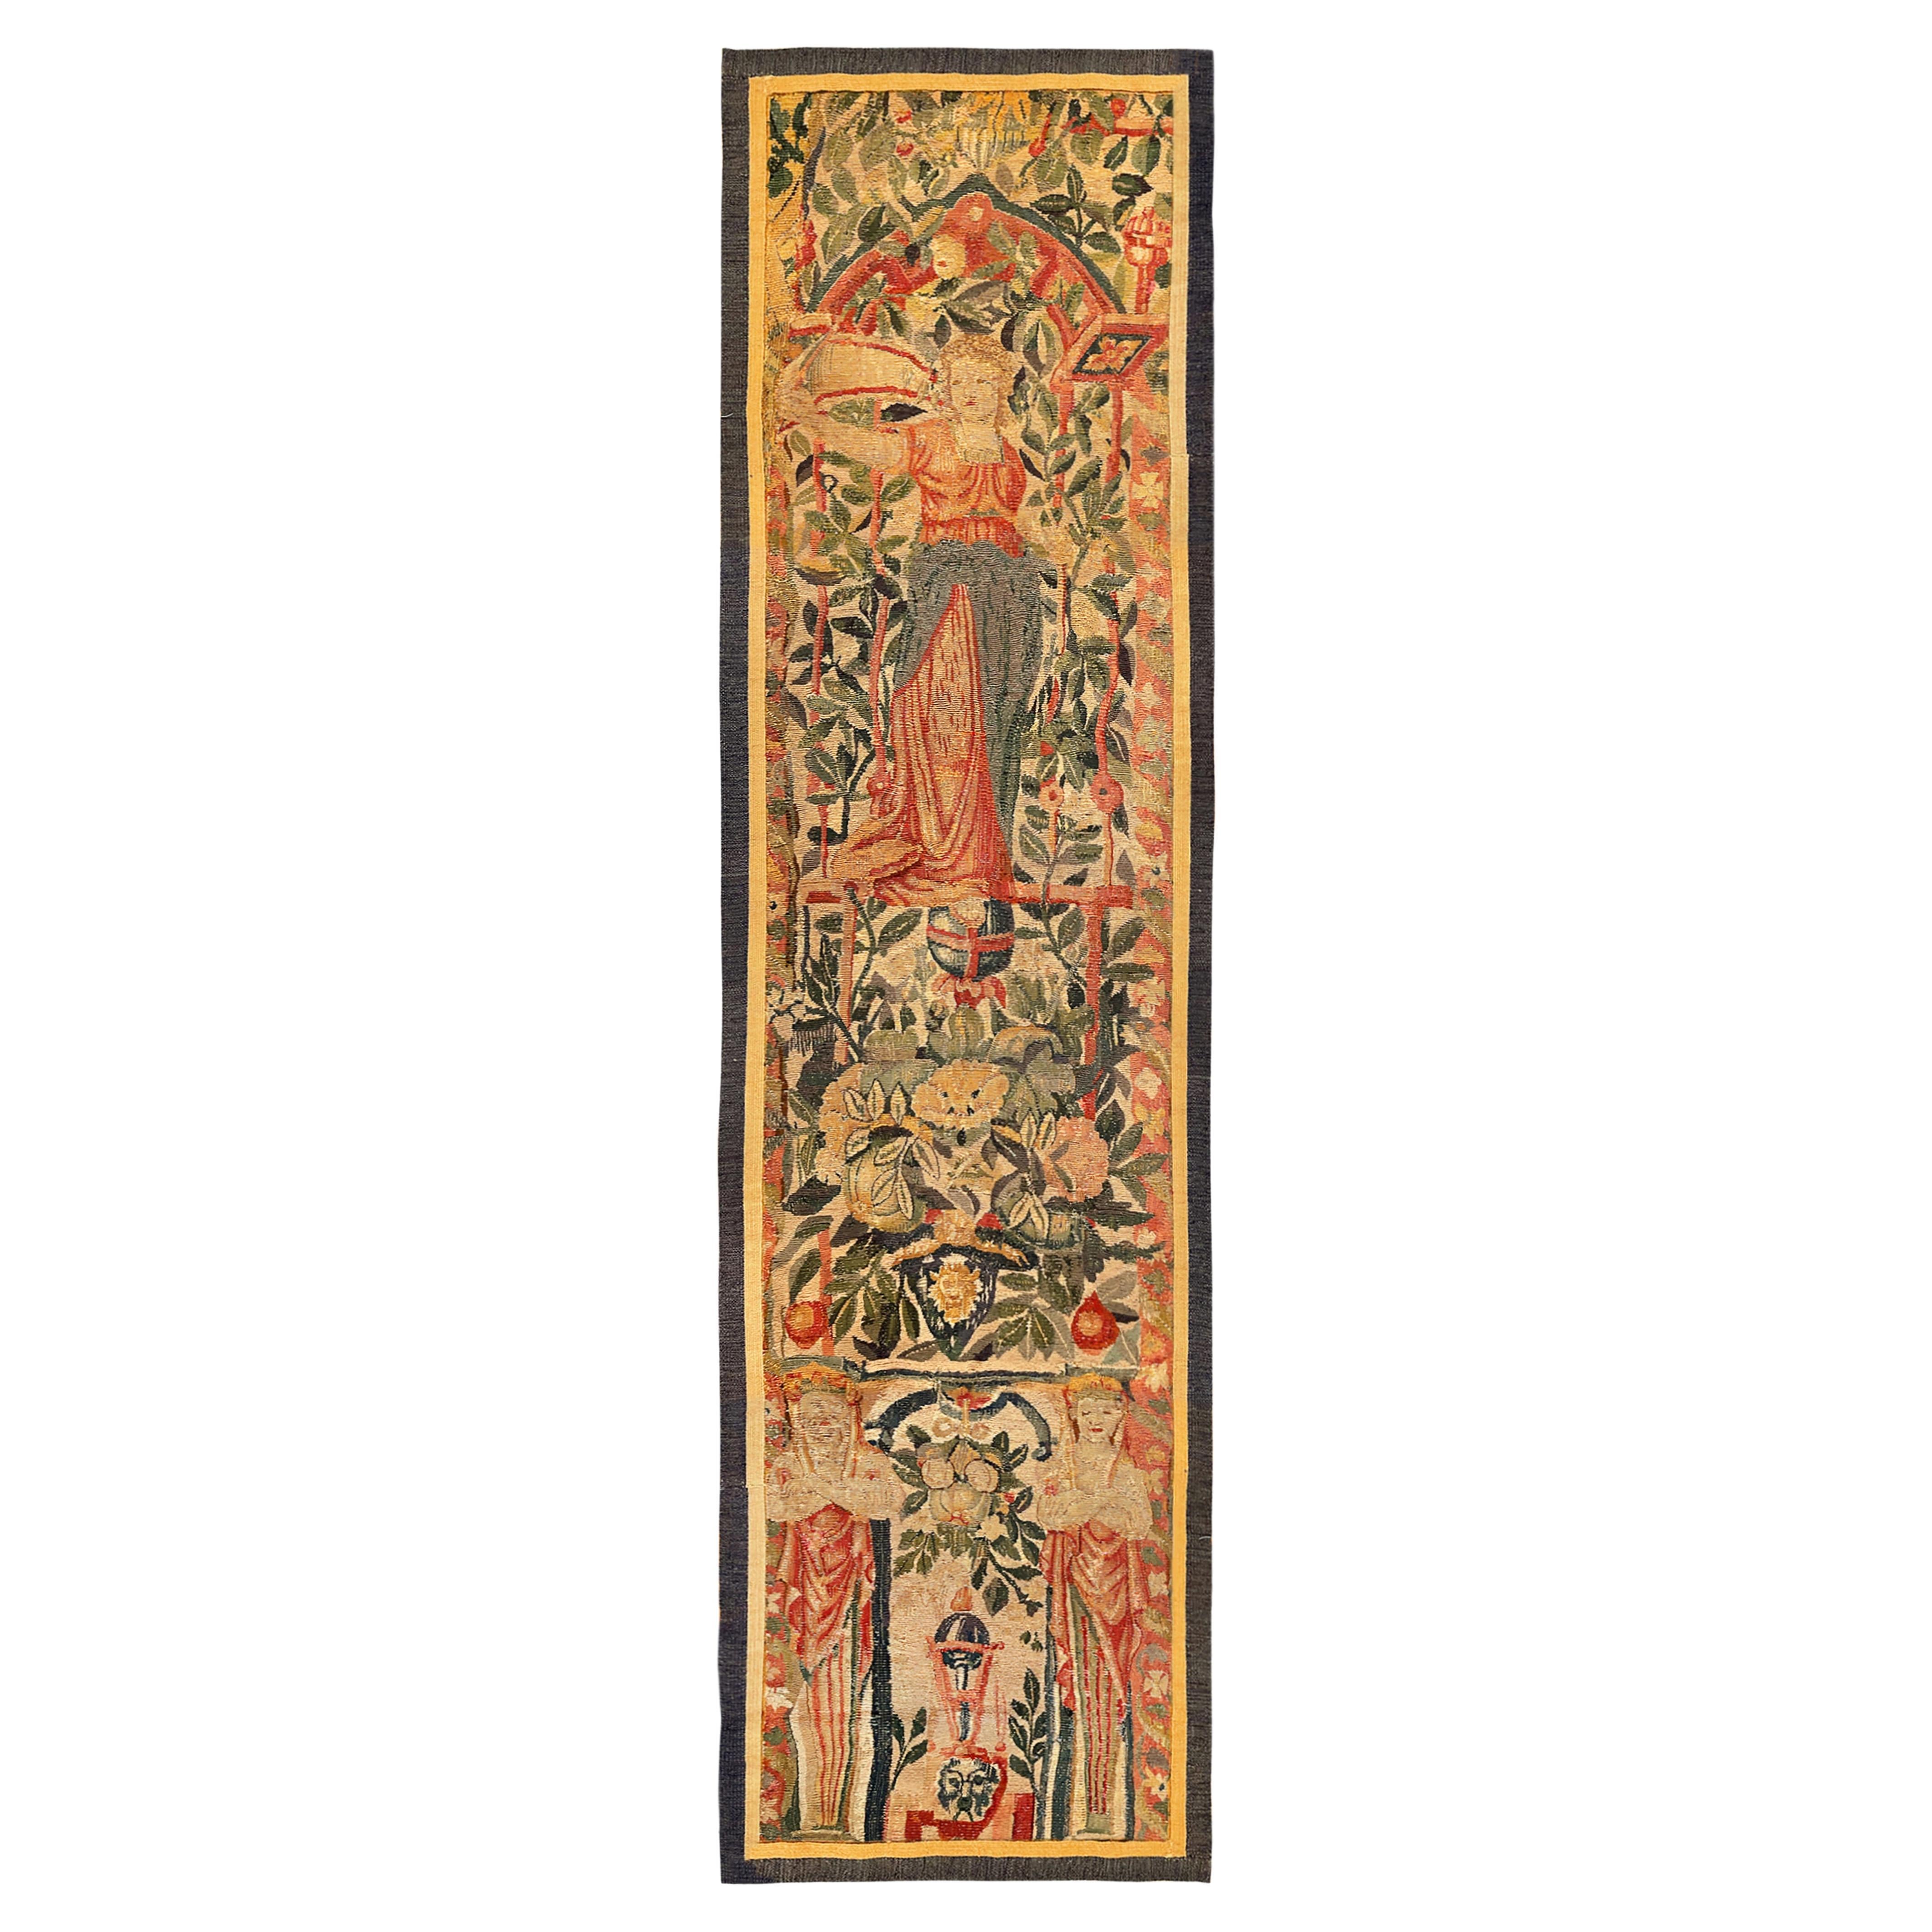 Panneau de tapisserie mythologique de Bruxelles de la fin du 16e siècle, Femmes et fleurs, Vertical